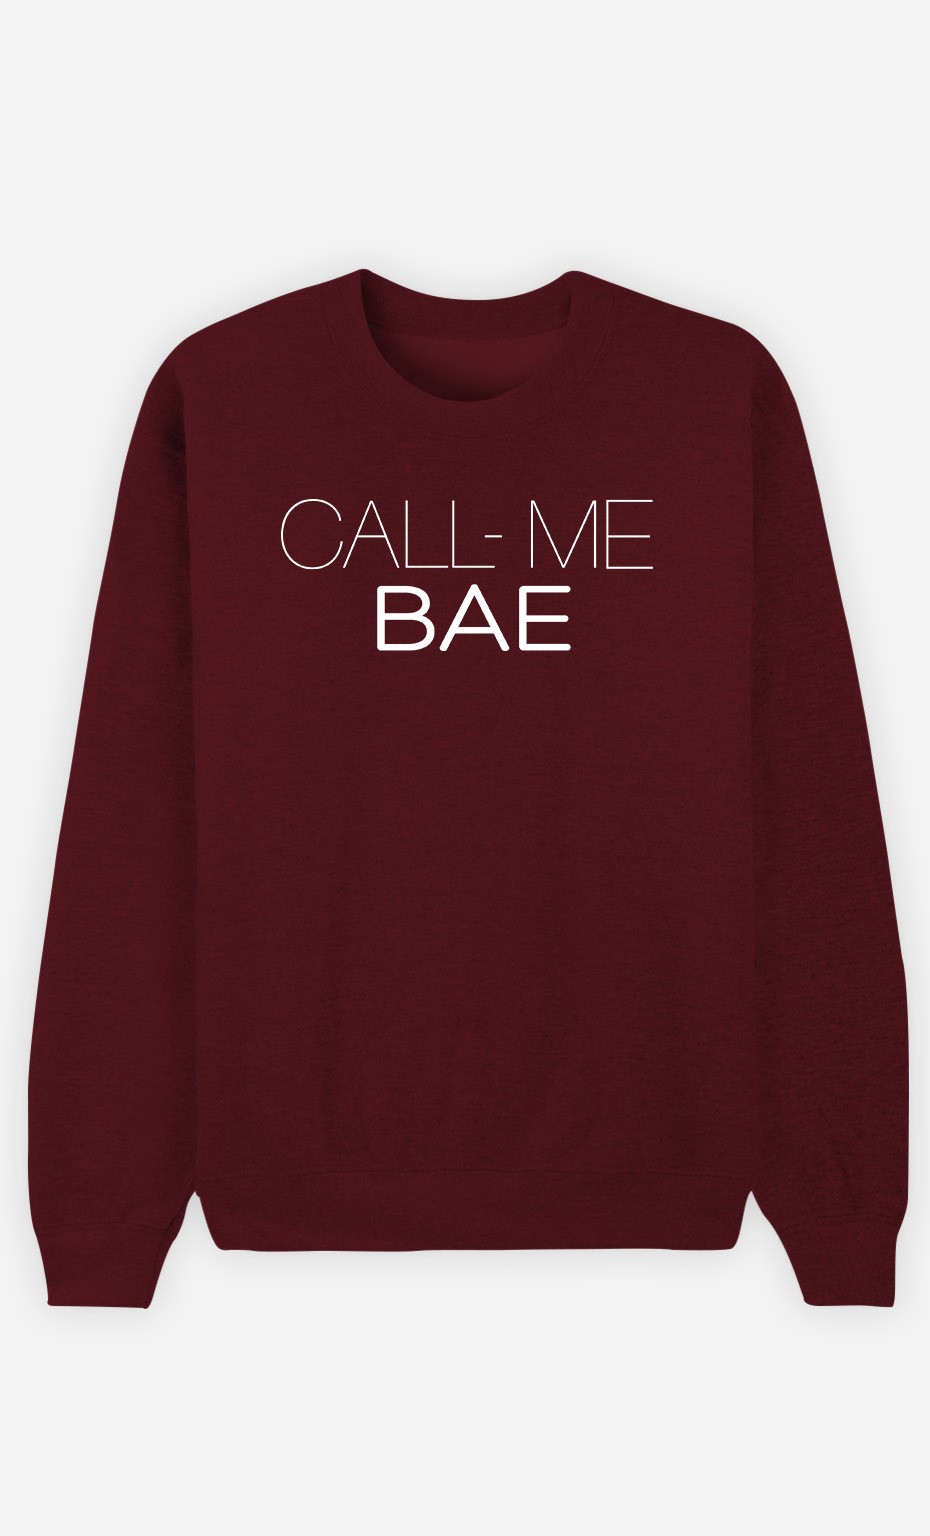 Call me bae